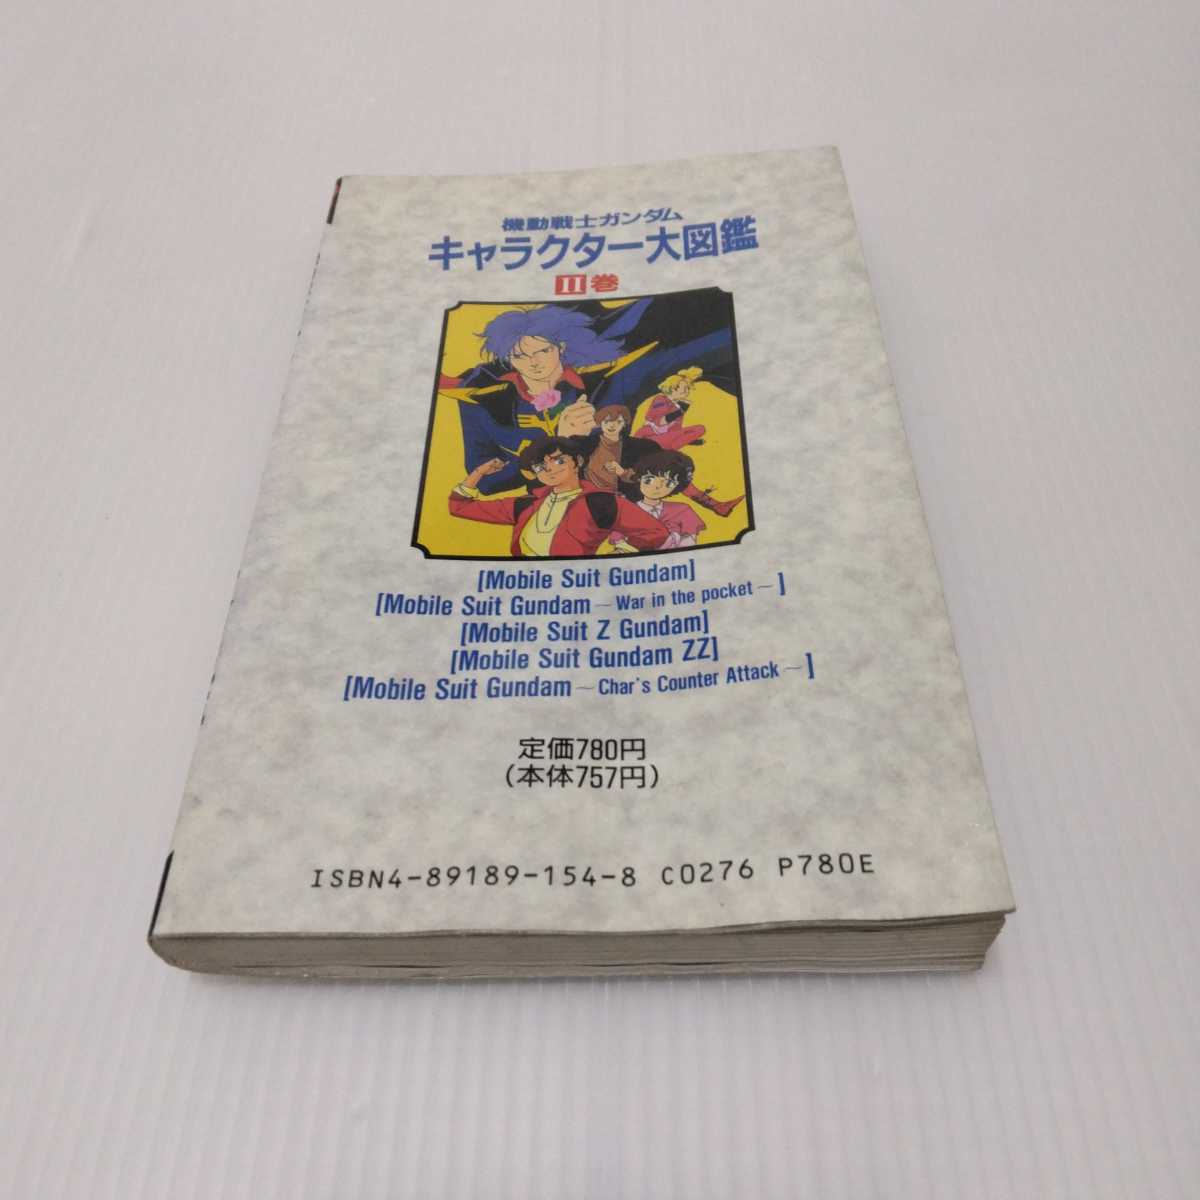 機動戦士ガンダム キャラクター大図鑑Ⅱ巻 ENTERTAINMENT BIBLE.33_画像2